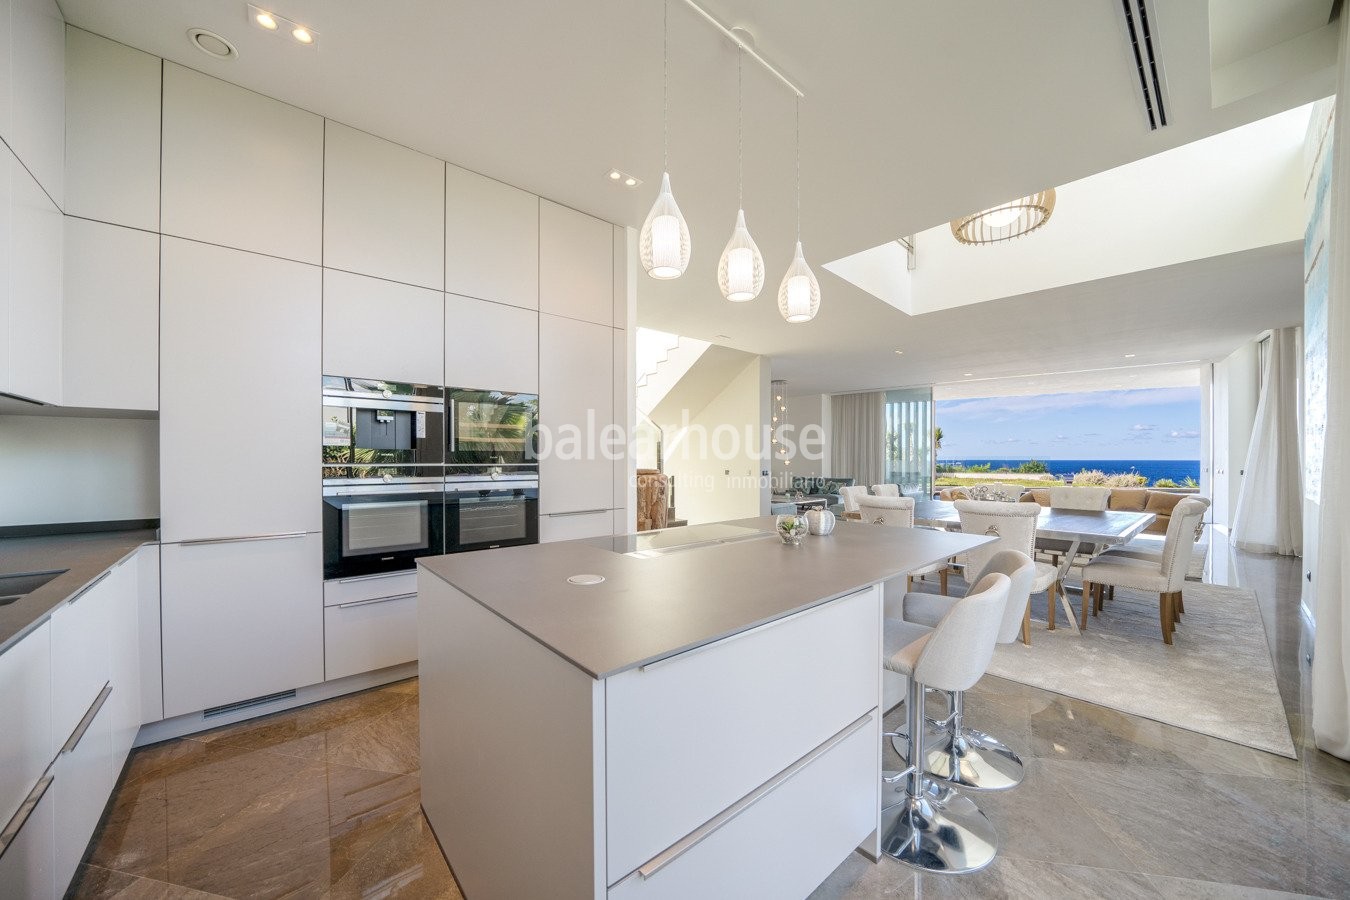 Nueva villa contemporánea en primera línea que domina vistas espectaculares al mar en Port Adriano.